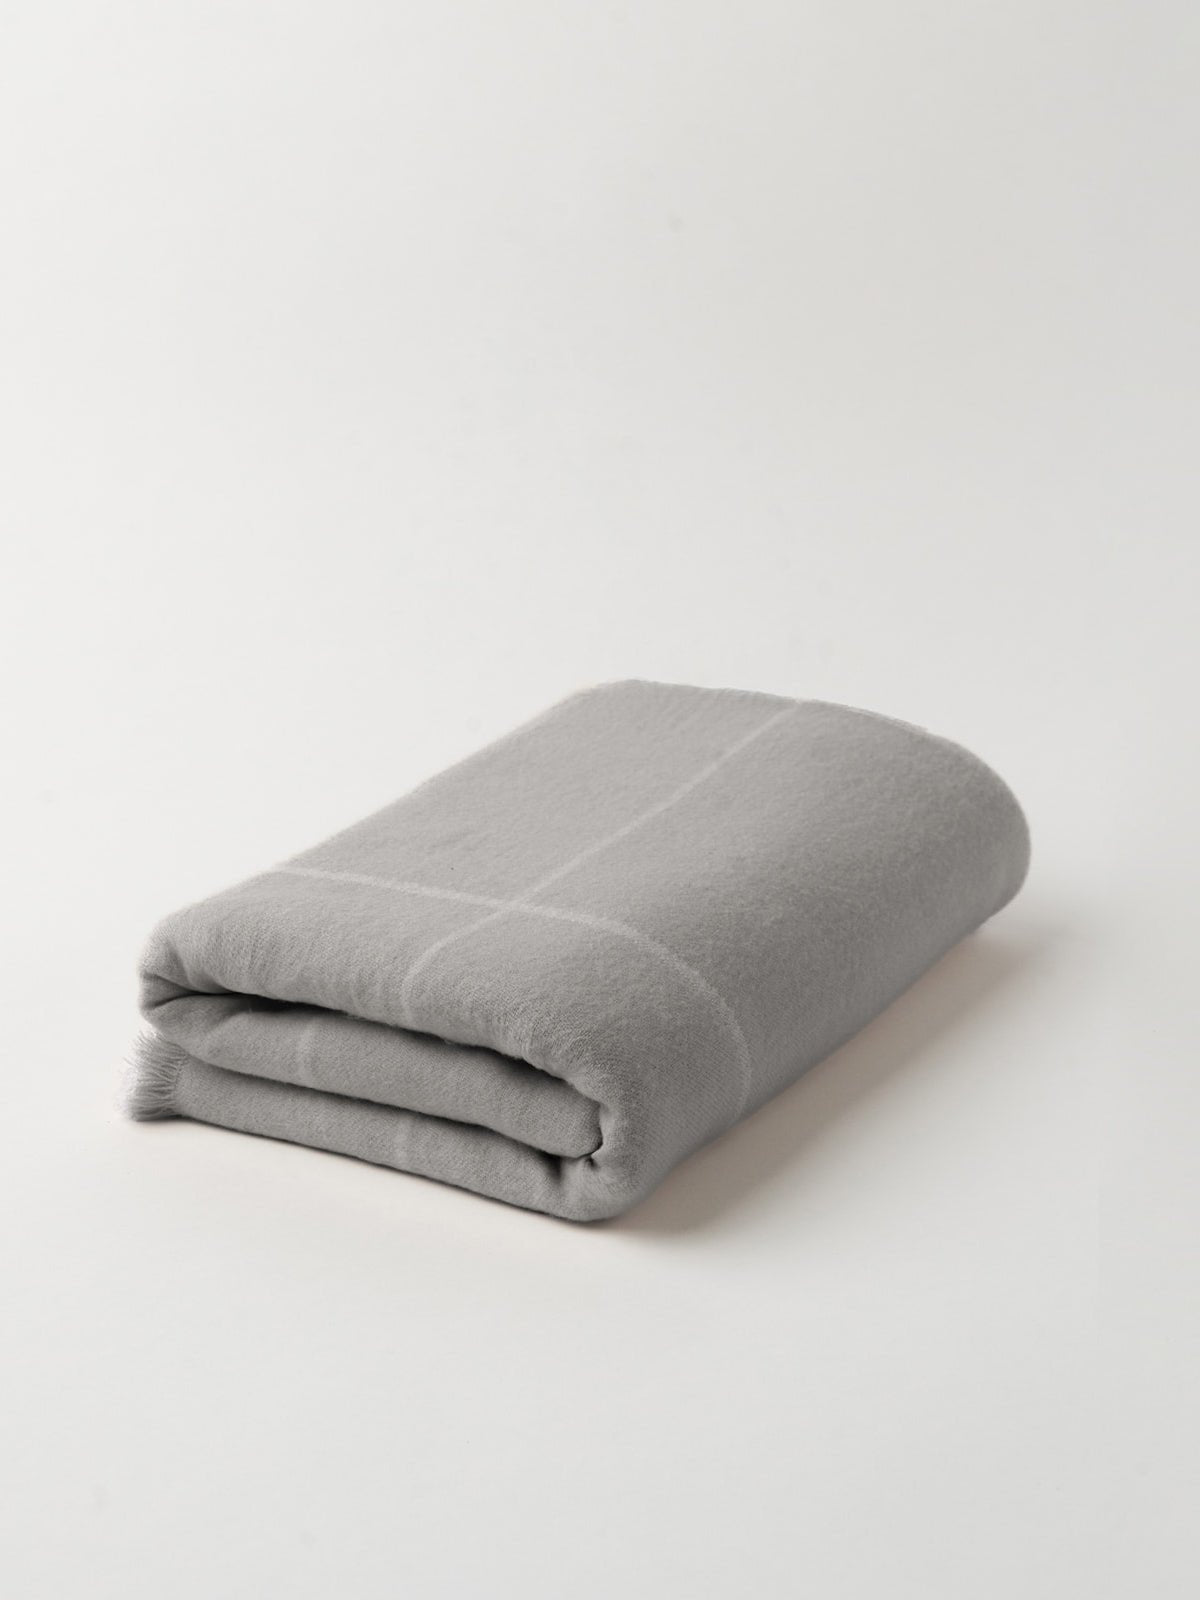 Grey windowpane blanket folded with white background 